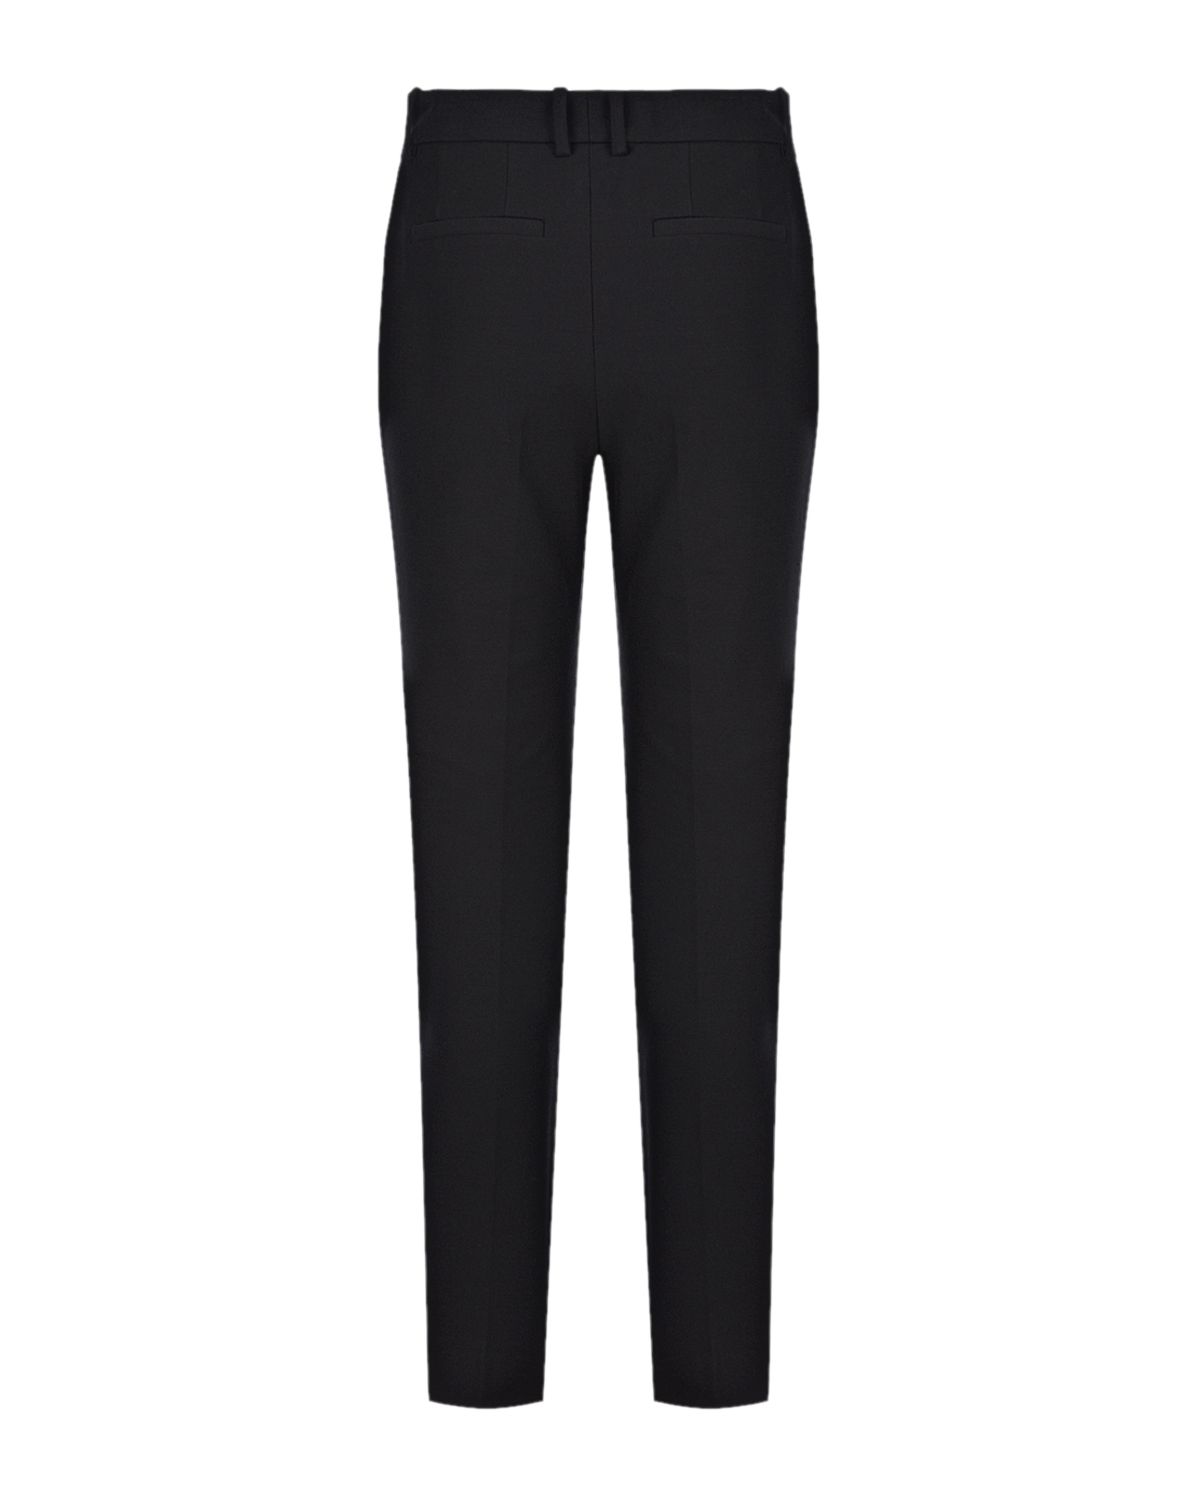 Черные брюки Coleman Joseph, размер 40, цвет черный - фото 5